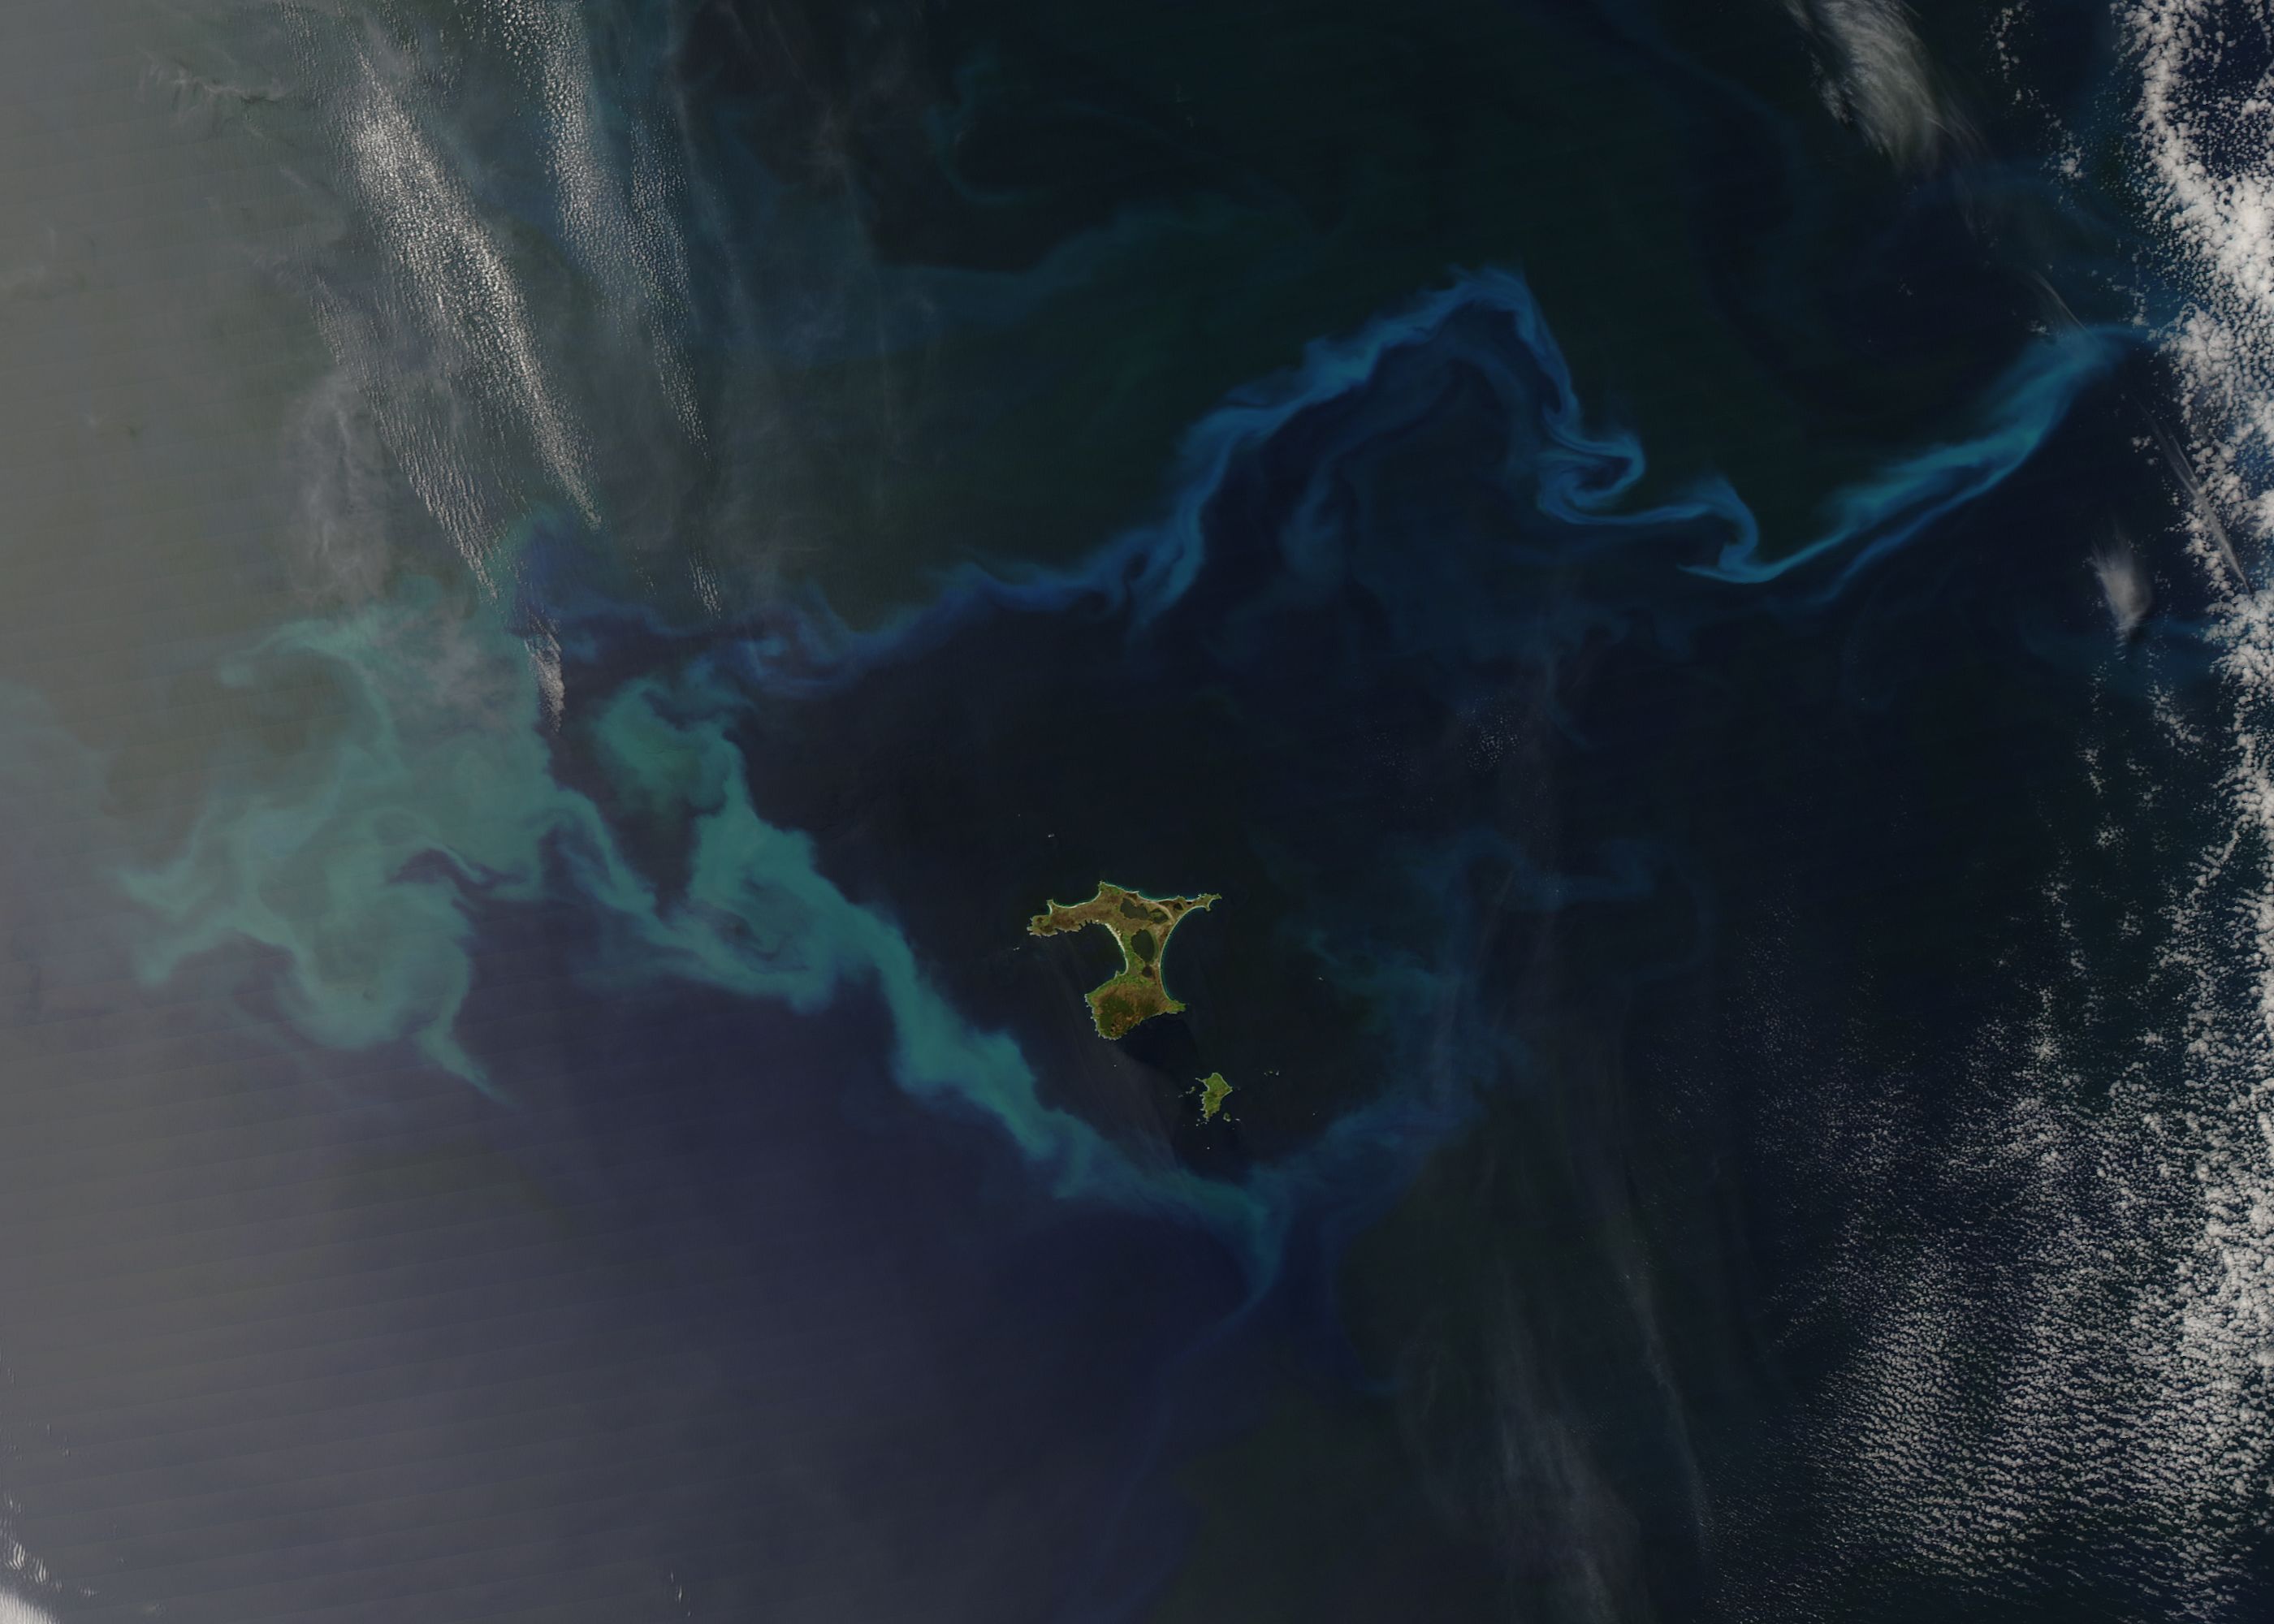 мусорный остров в тихом океане со спутника